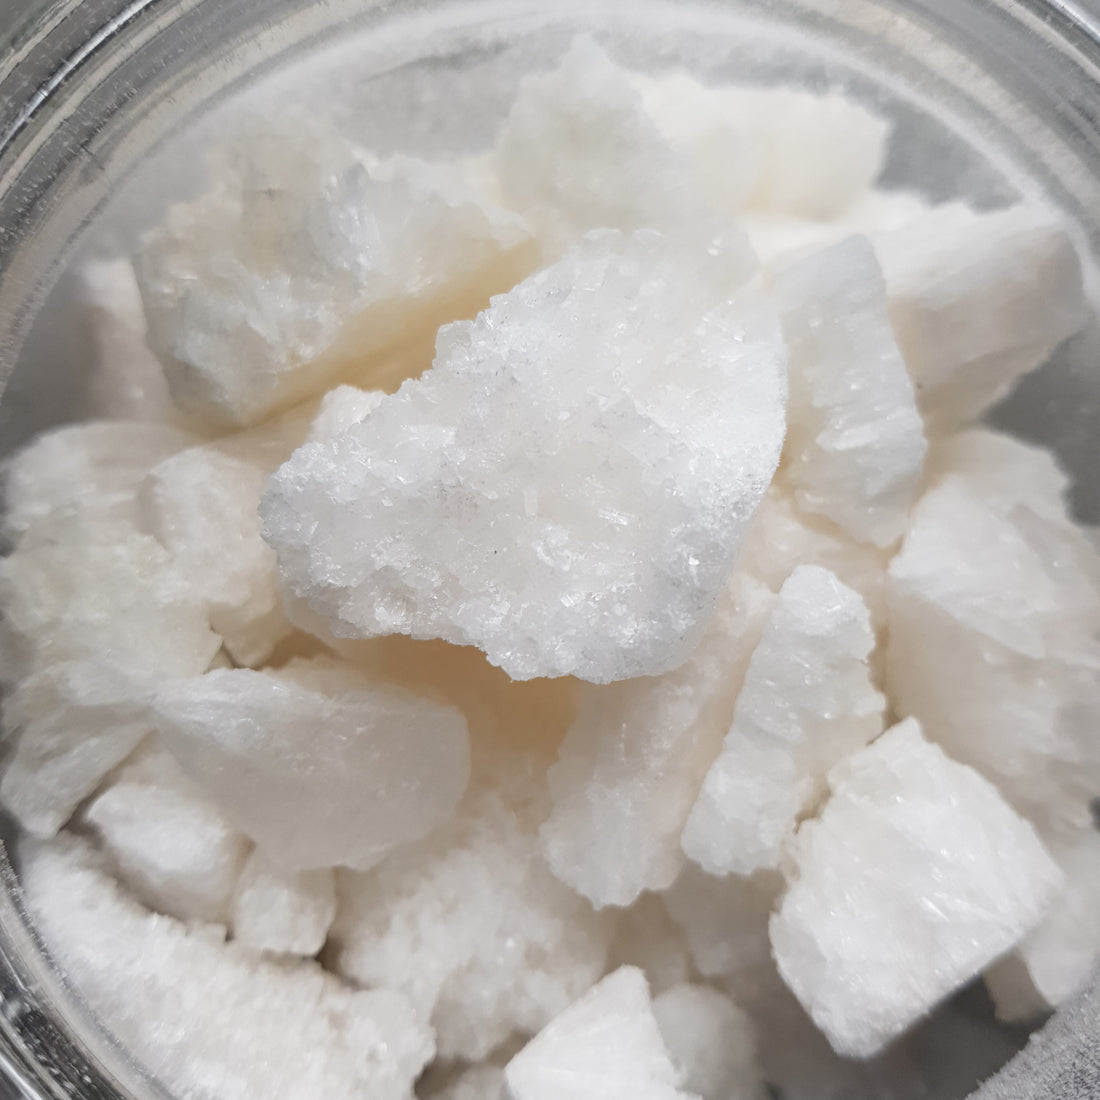 Cristalli di CBD – Cosa sono e come usarli